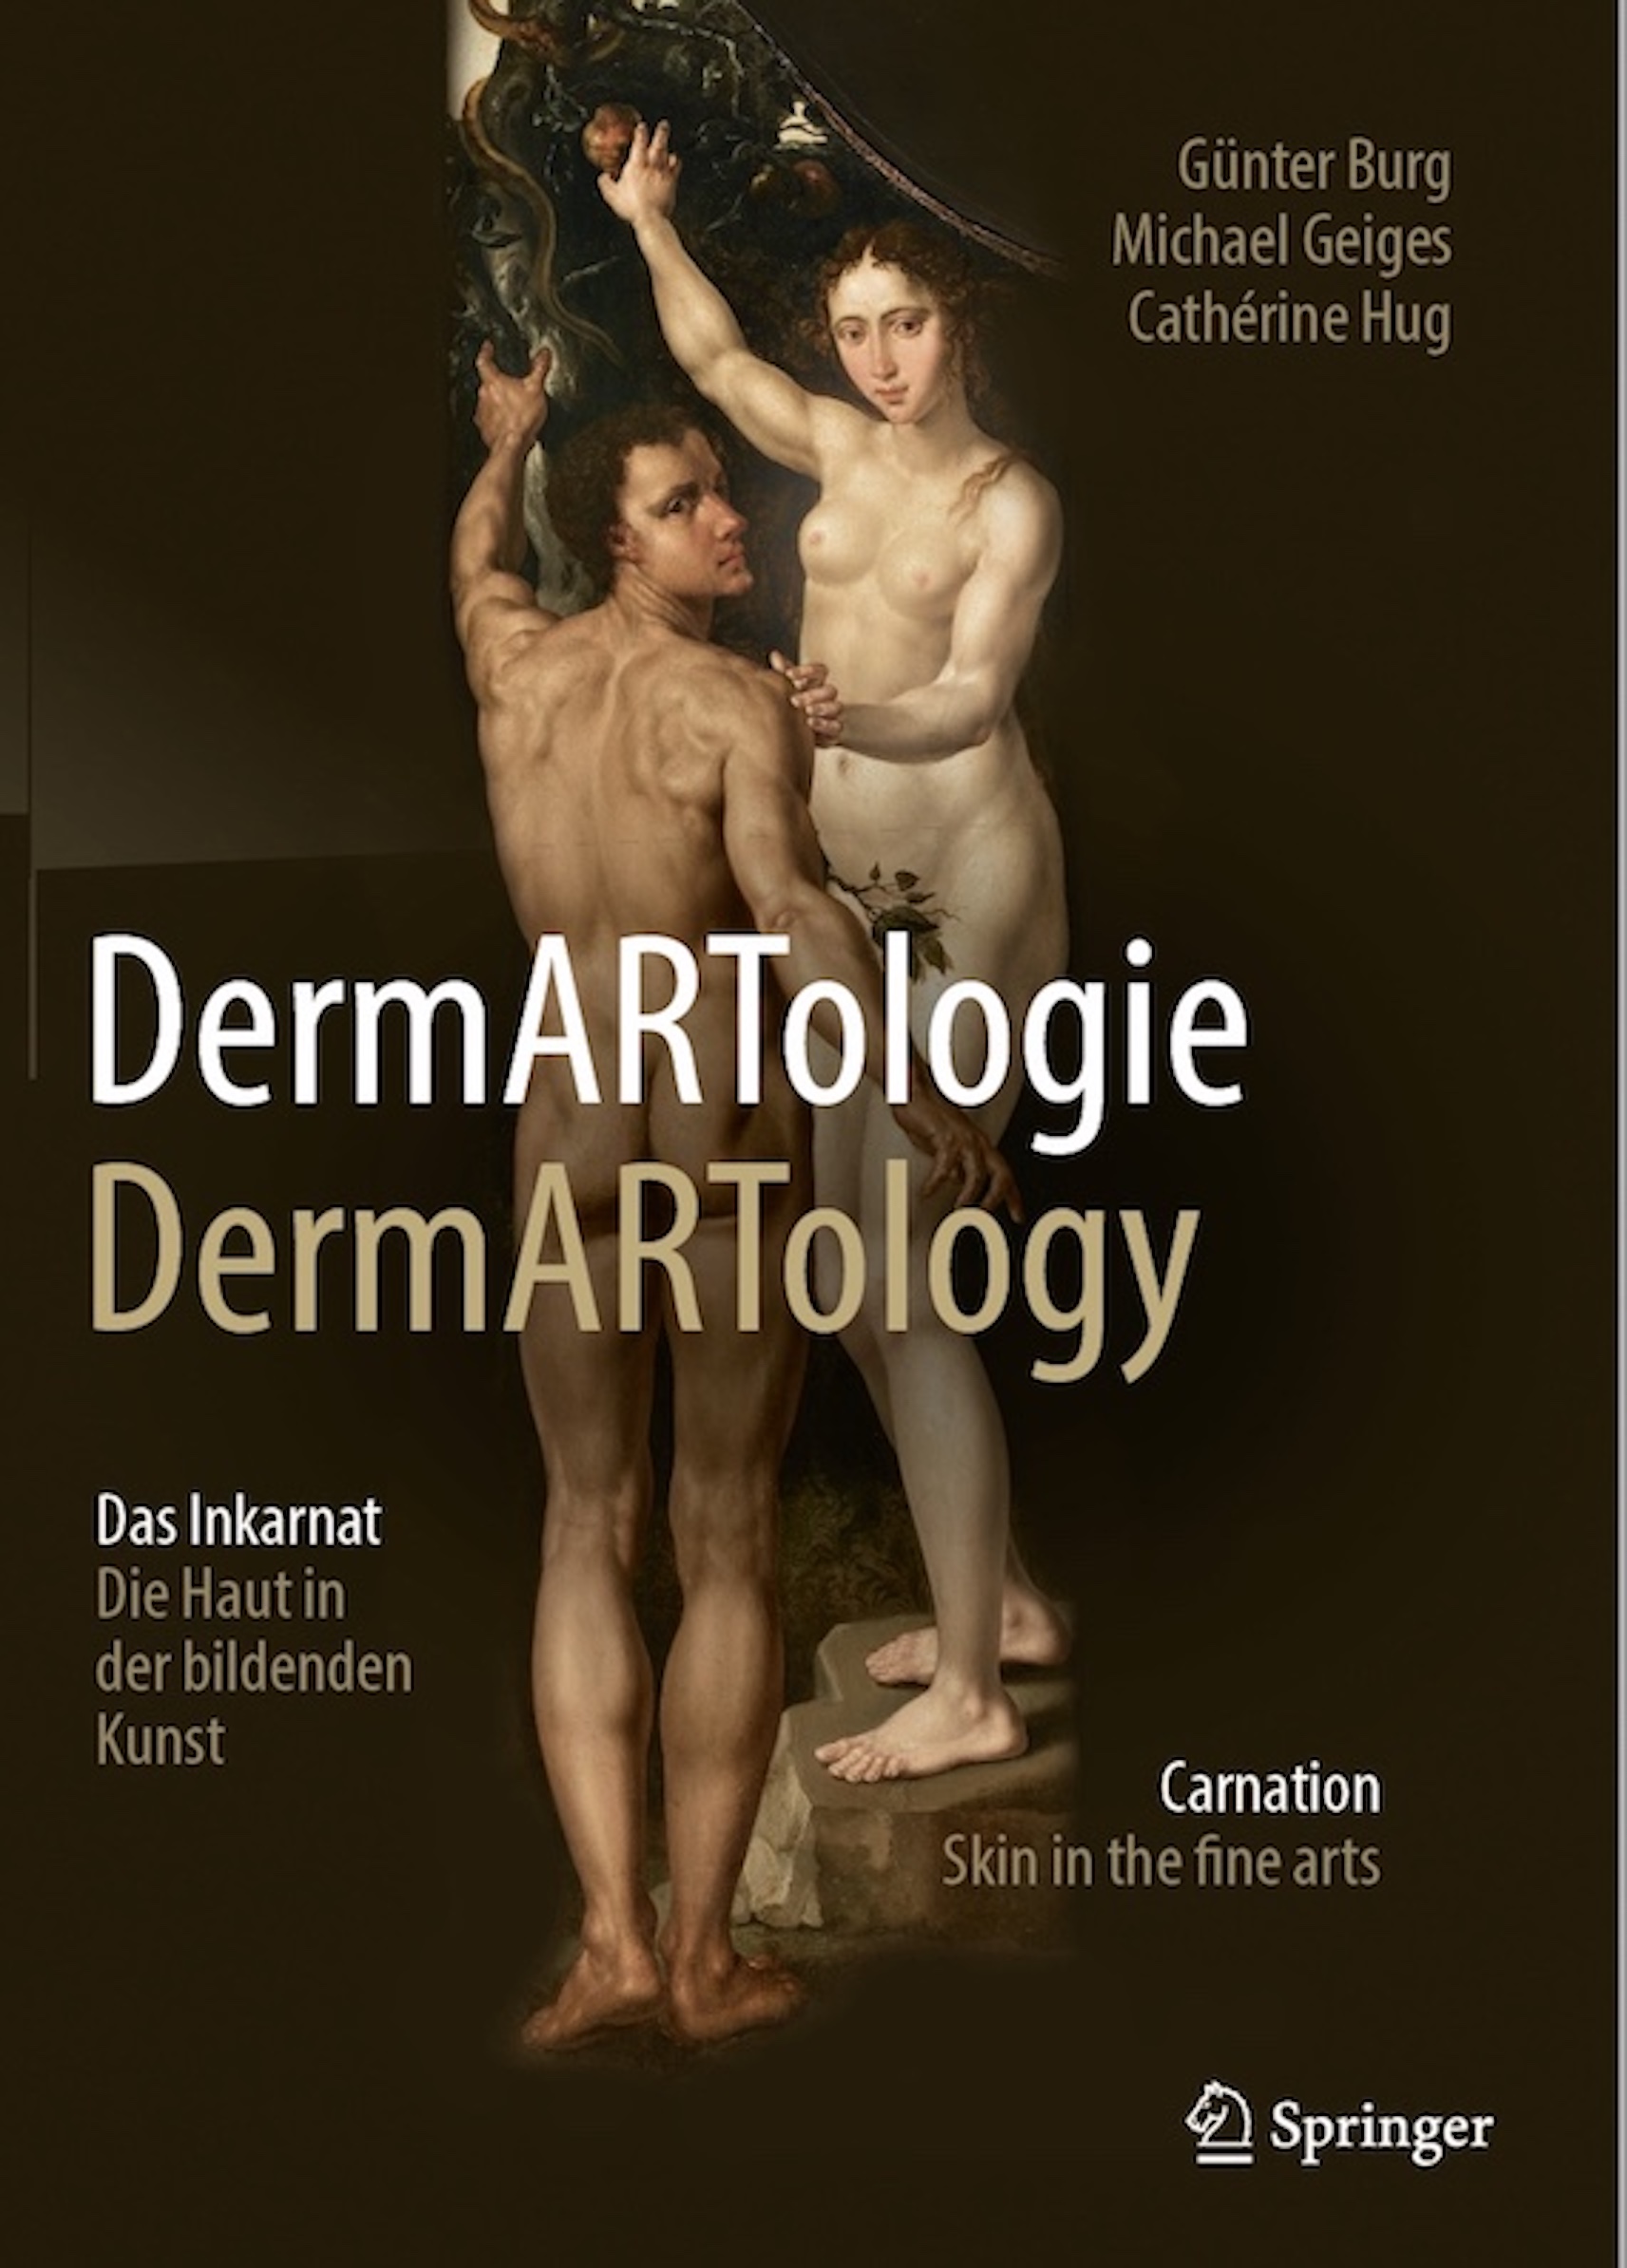 Titelbild Buch DermARTologie;